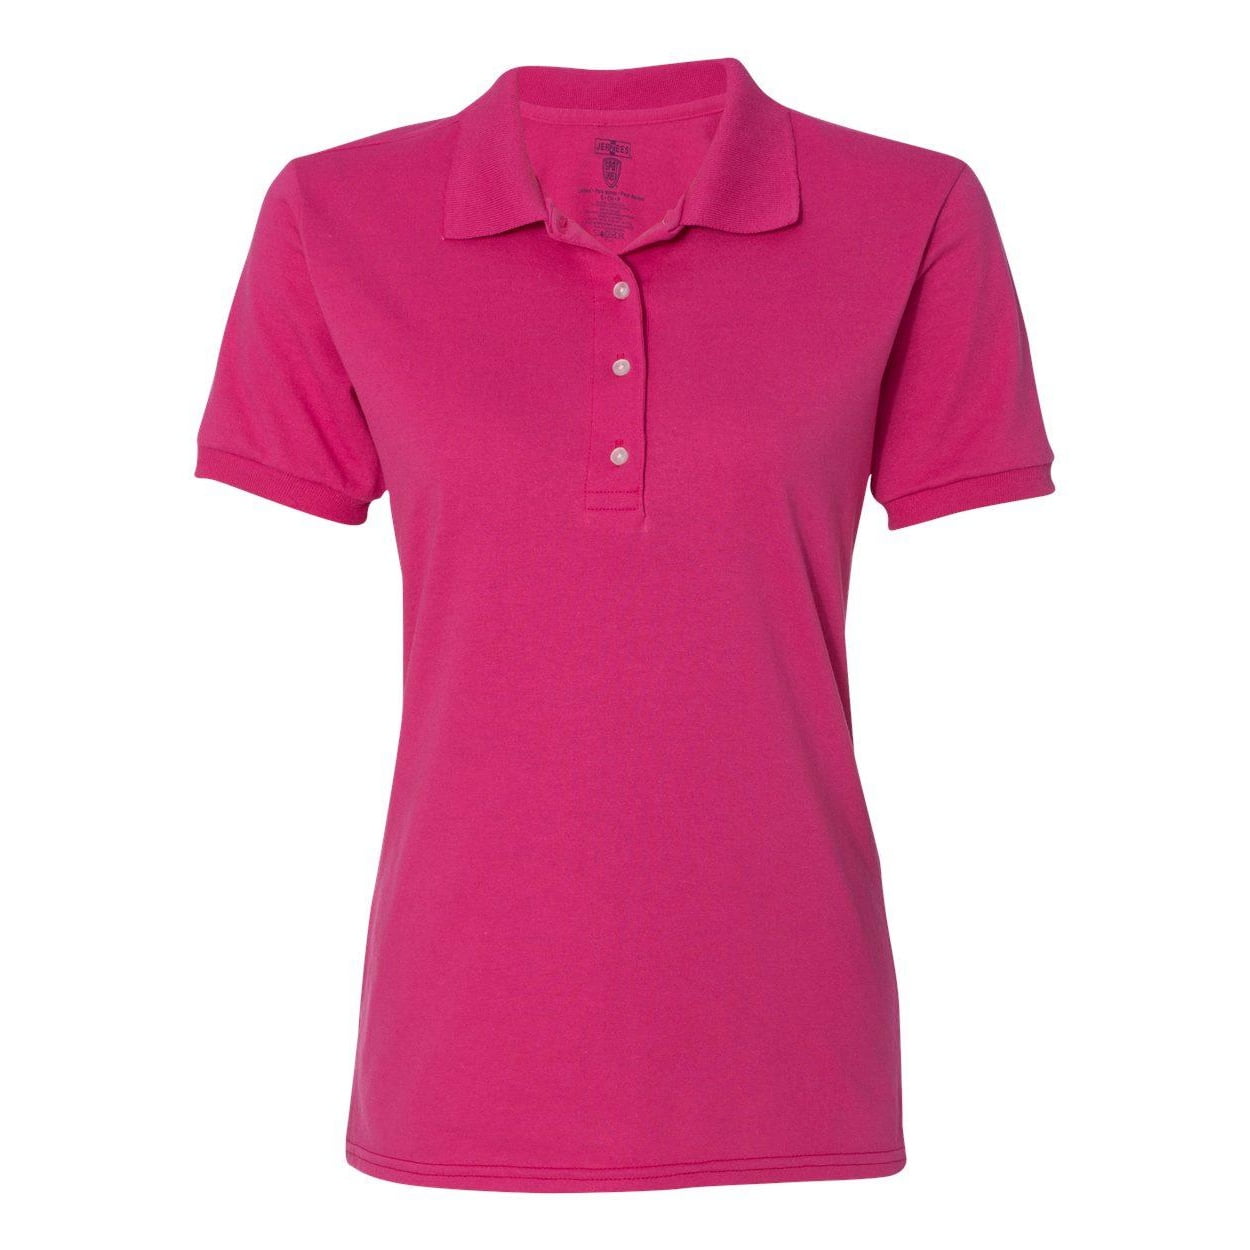 JERZEES - Women's Spotshield 50/50 Polo - 437WR - Cyber Pink - Size: L ...